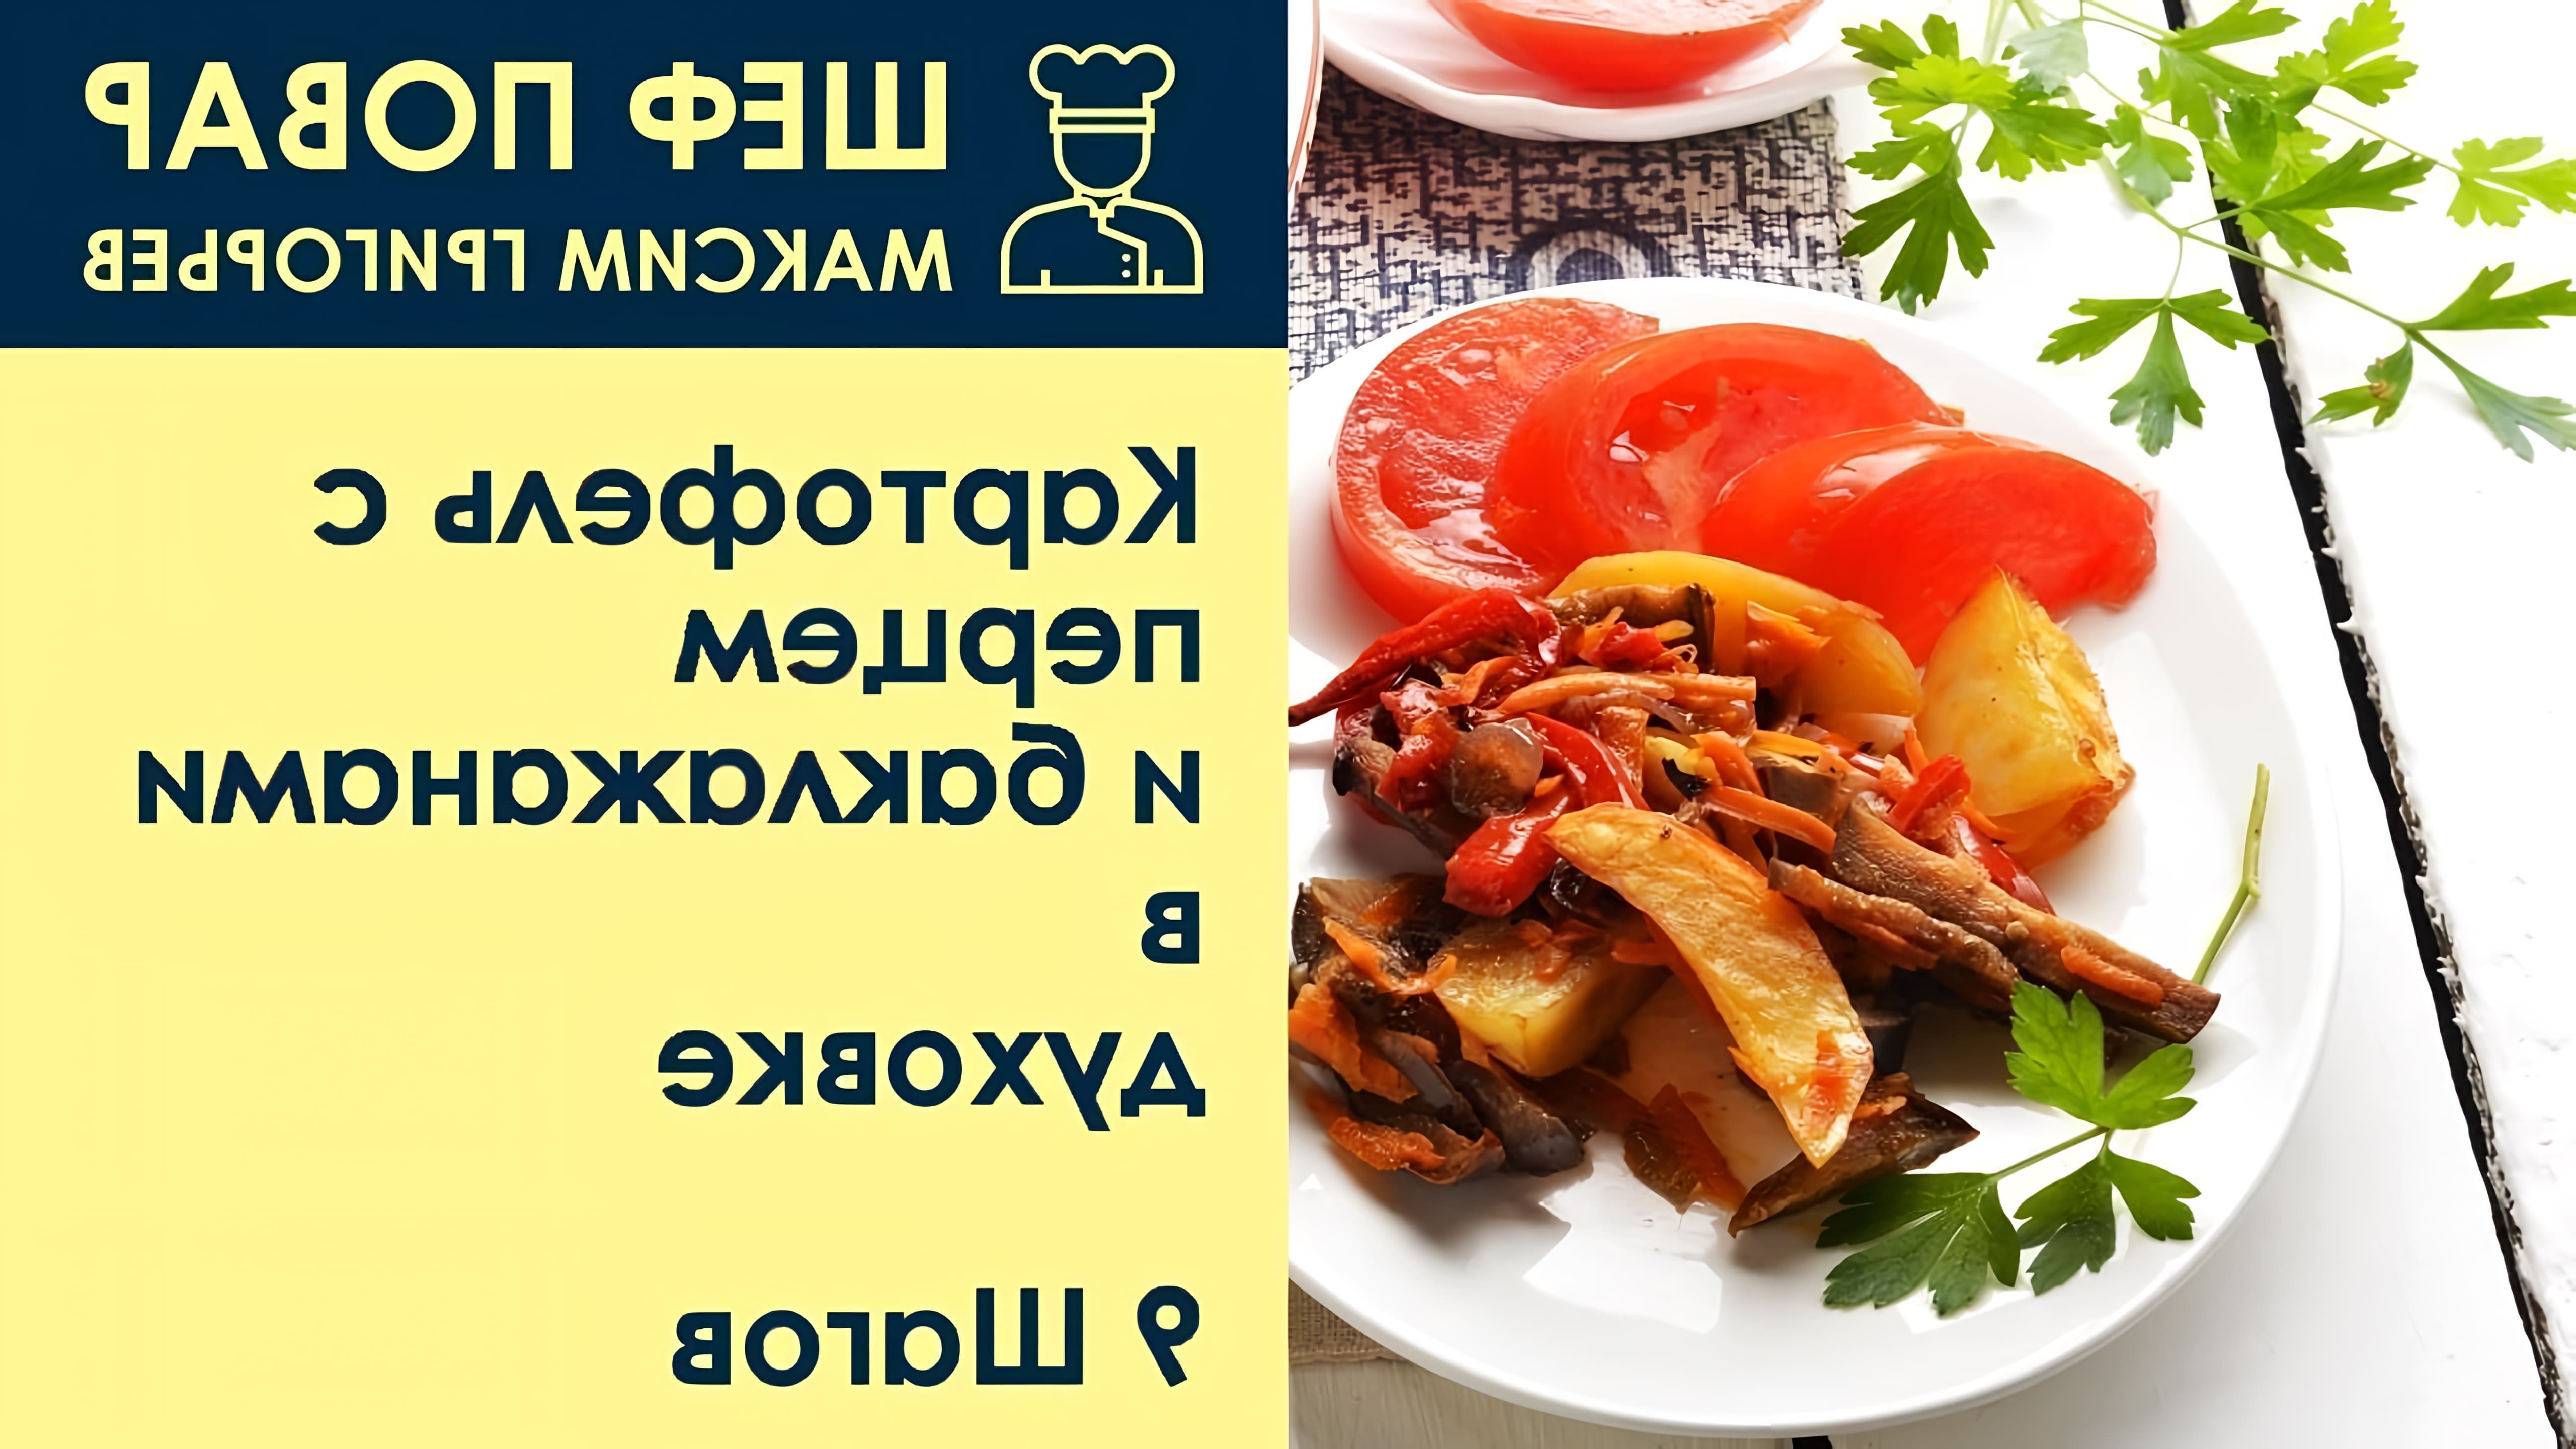 В этом видео шеф-повар Максим Григорьев показывает, как приготовить картофель с перцем и баклажанами в духовке